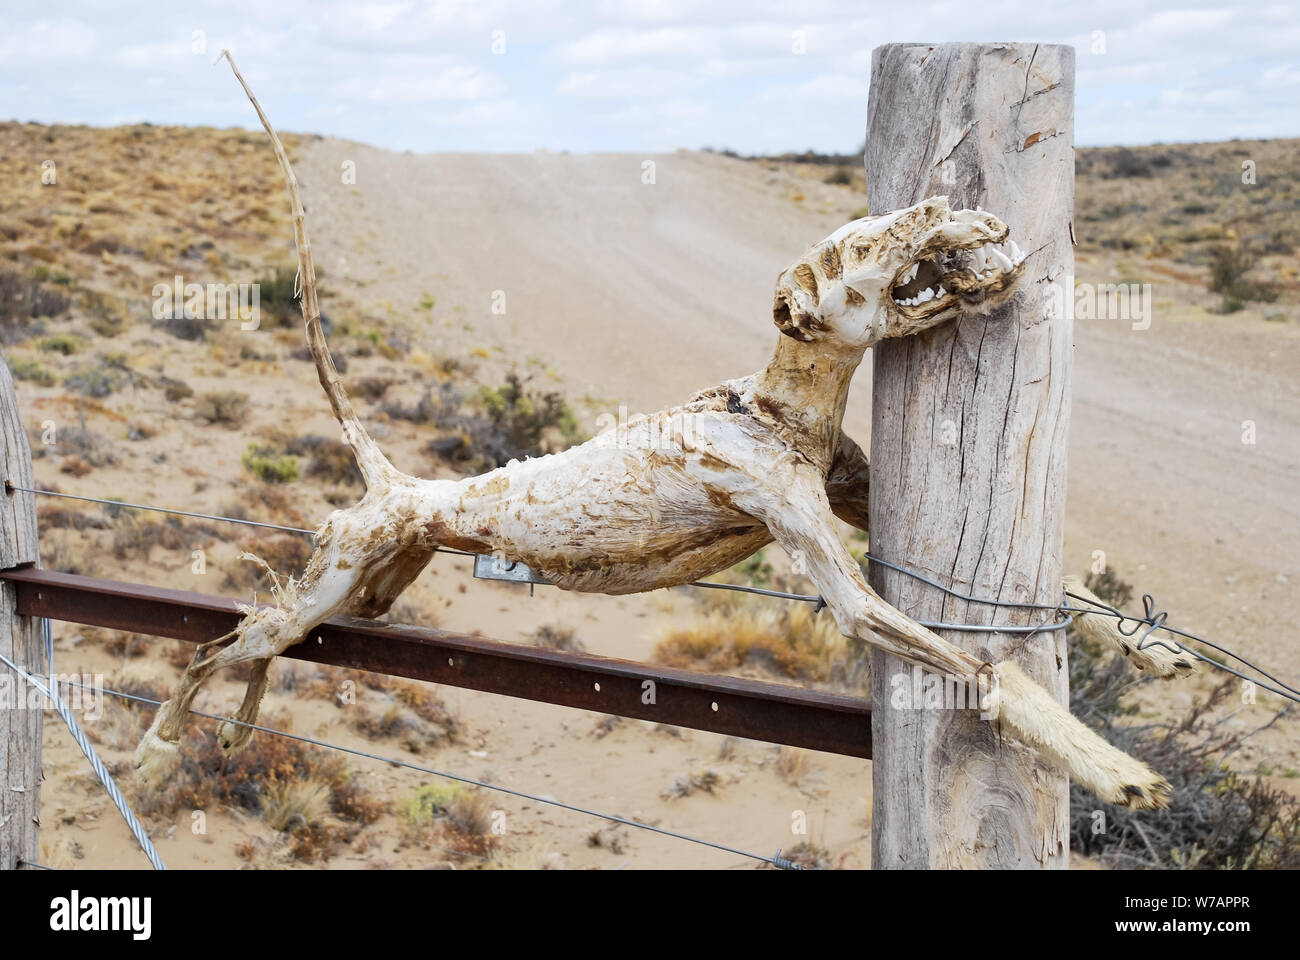 Los huesos del esqueleto de un animal muerto colgado en la puerta de un borde o valla o cableada en una ruta rural meridional argentina Foto de stock